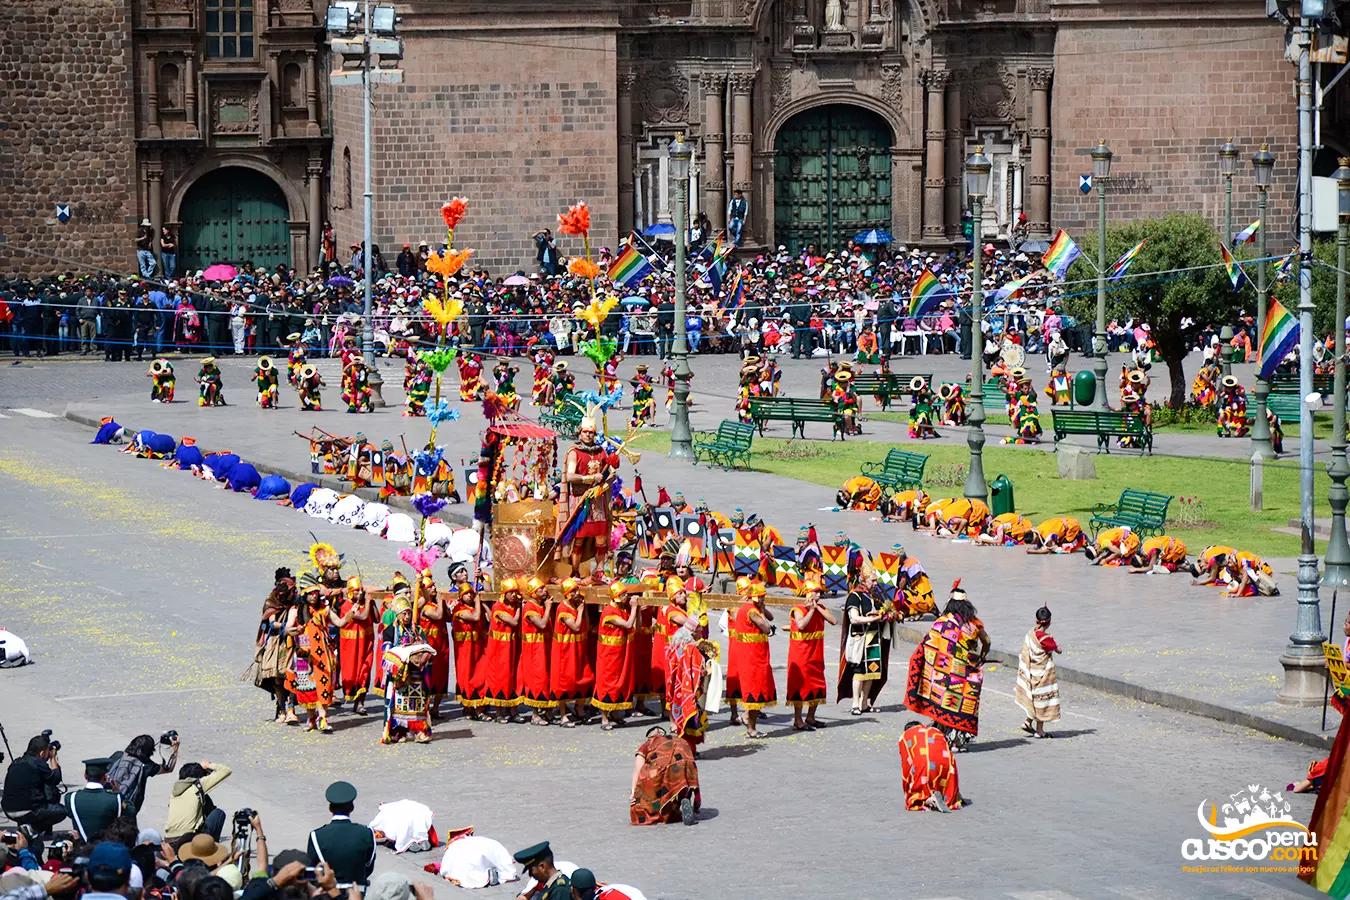 Inti Raymi Fiesta Del Sol. Source: CuscoPeru.com